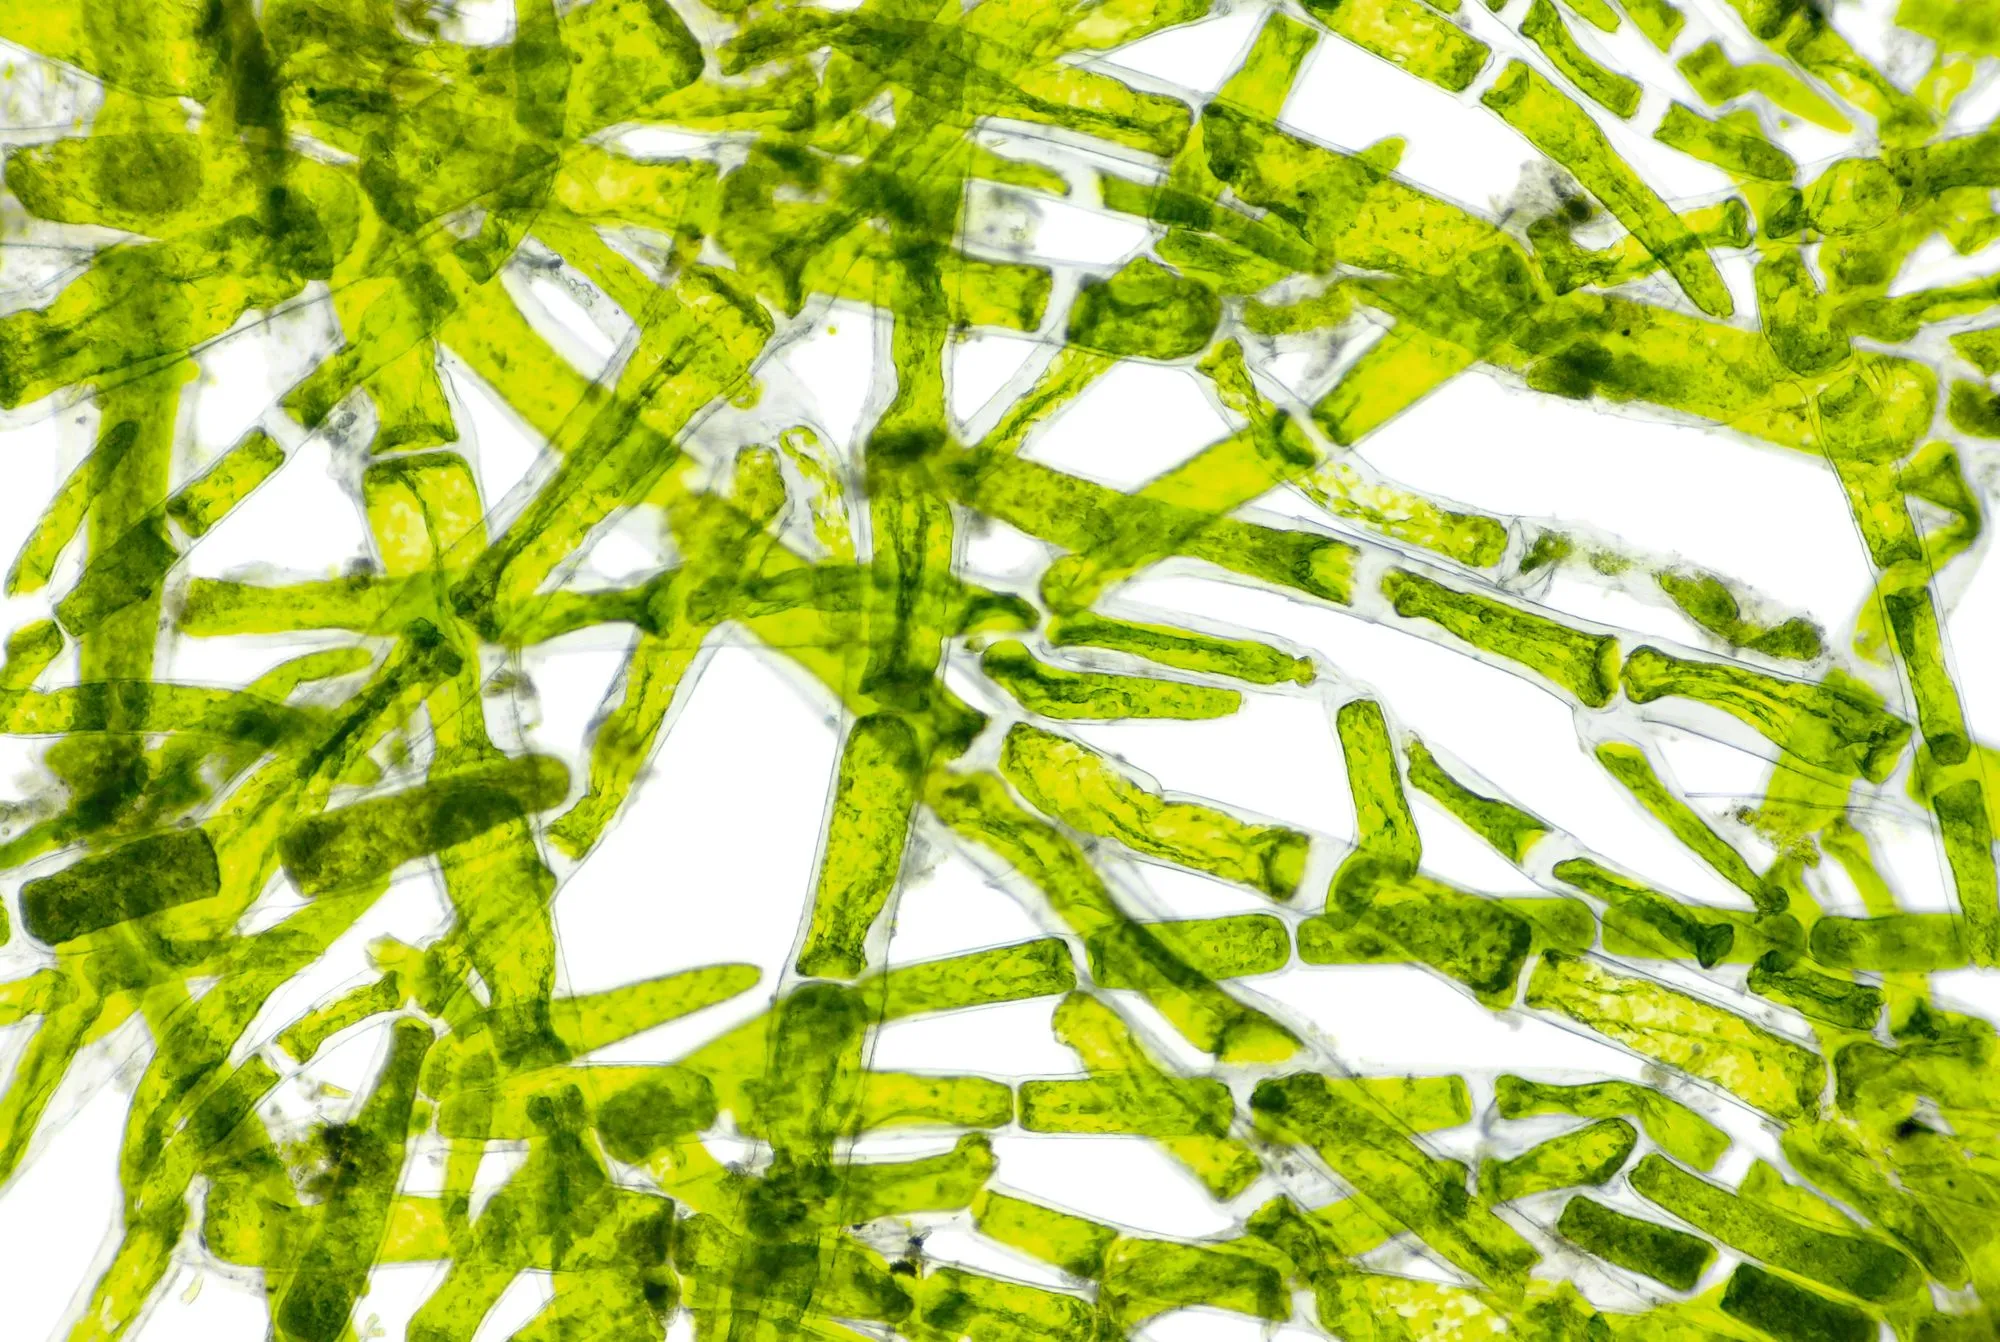 Cellules de cladophore, une algue verte, vues au microscope.